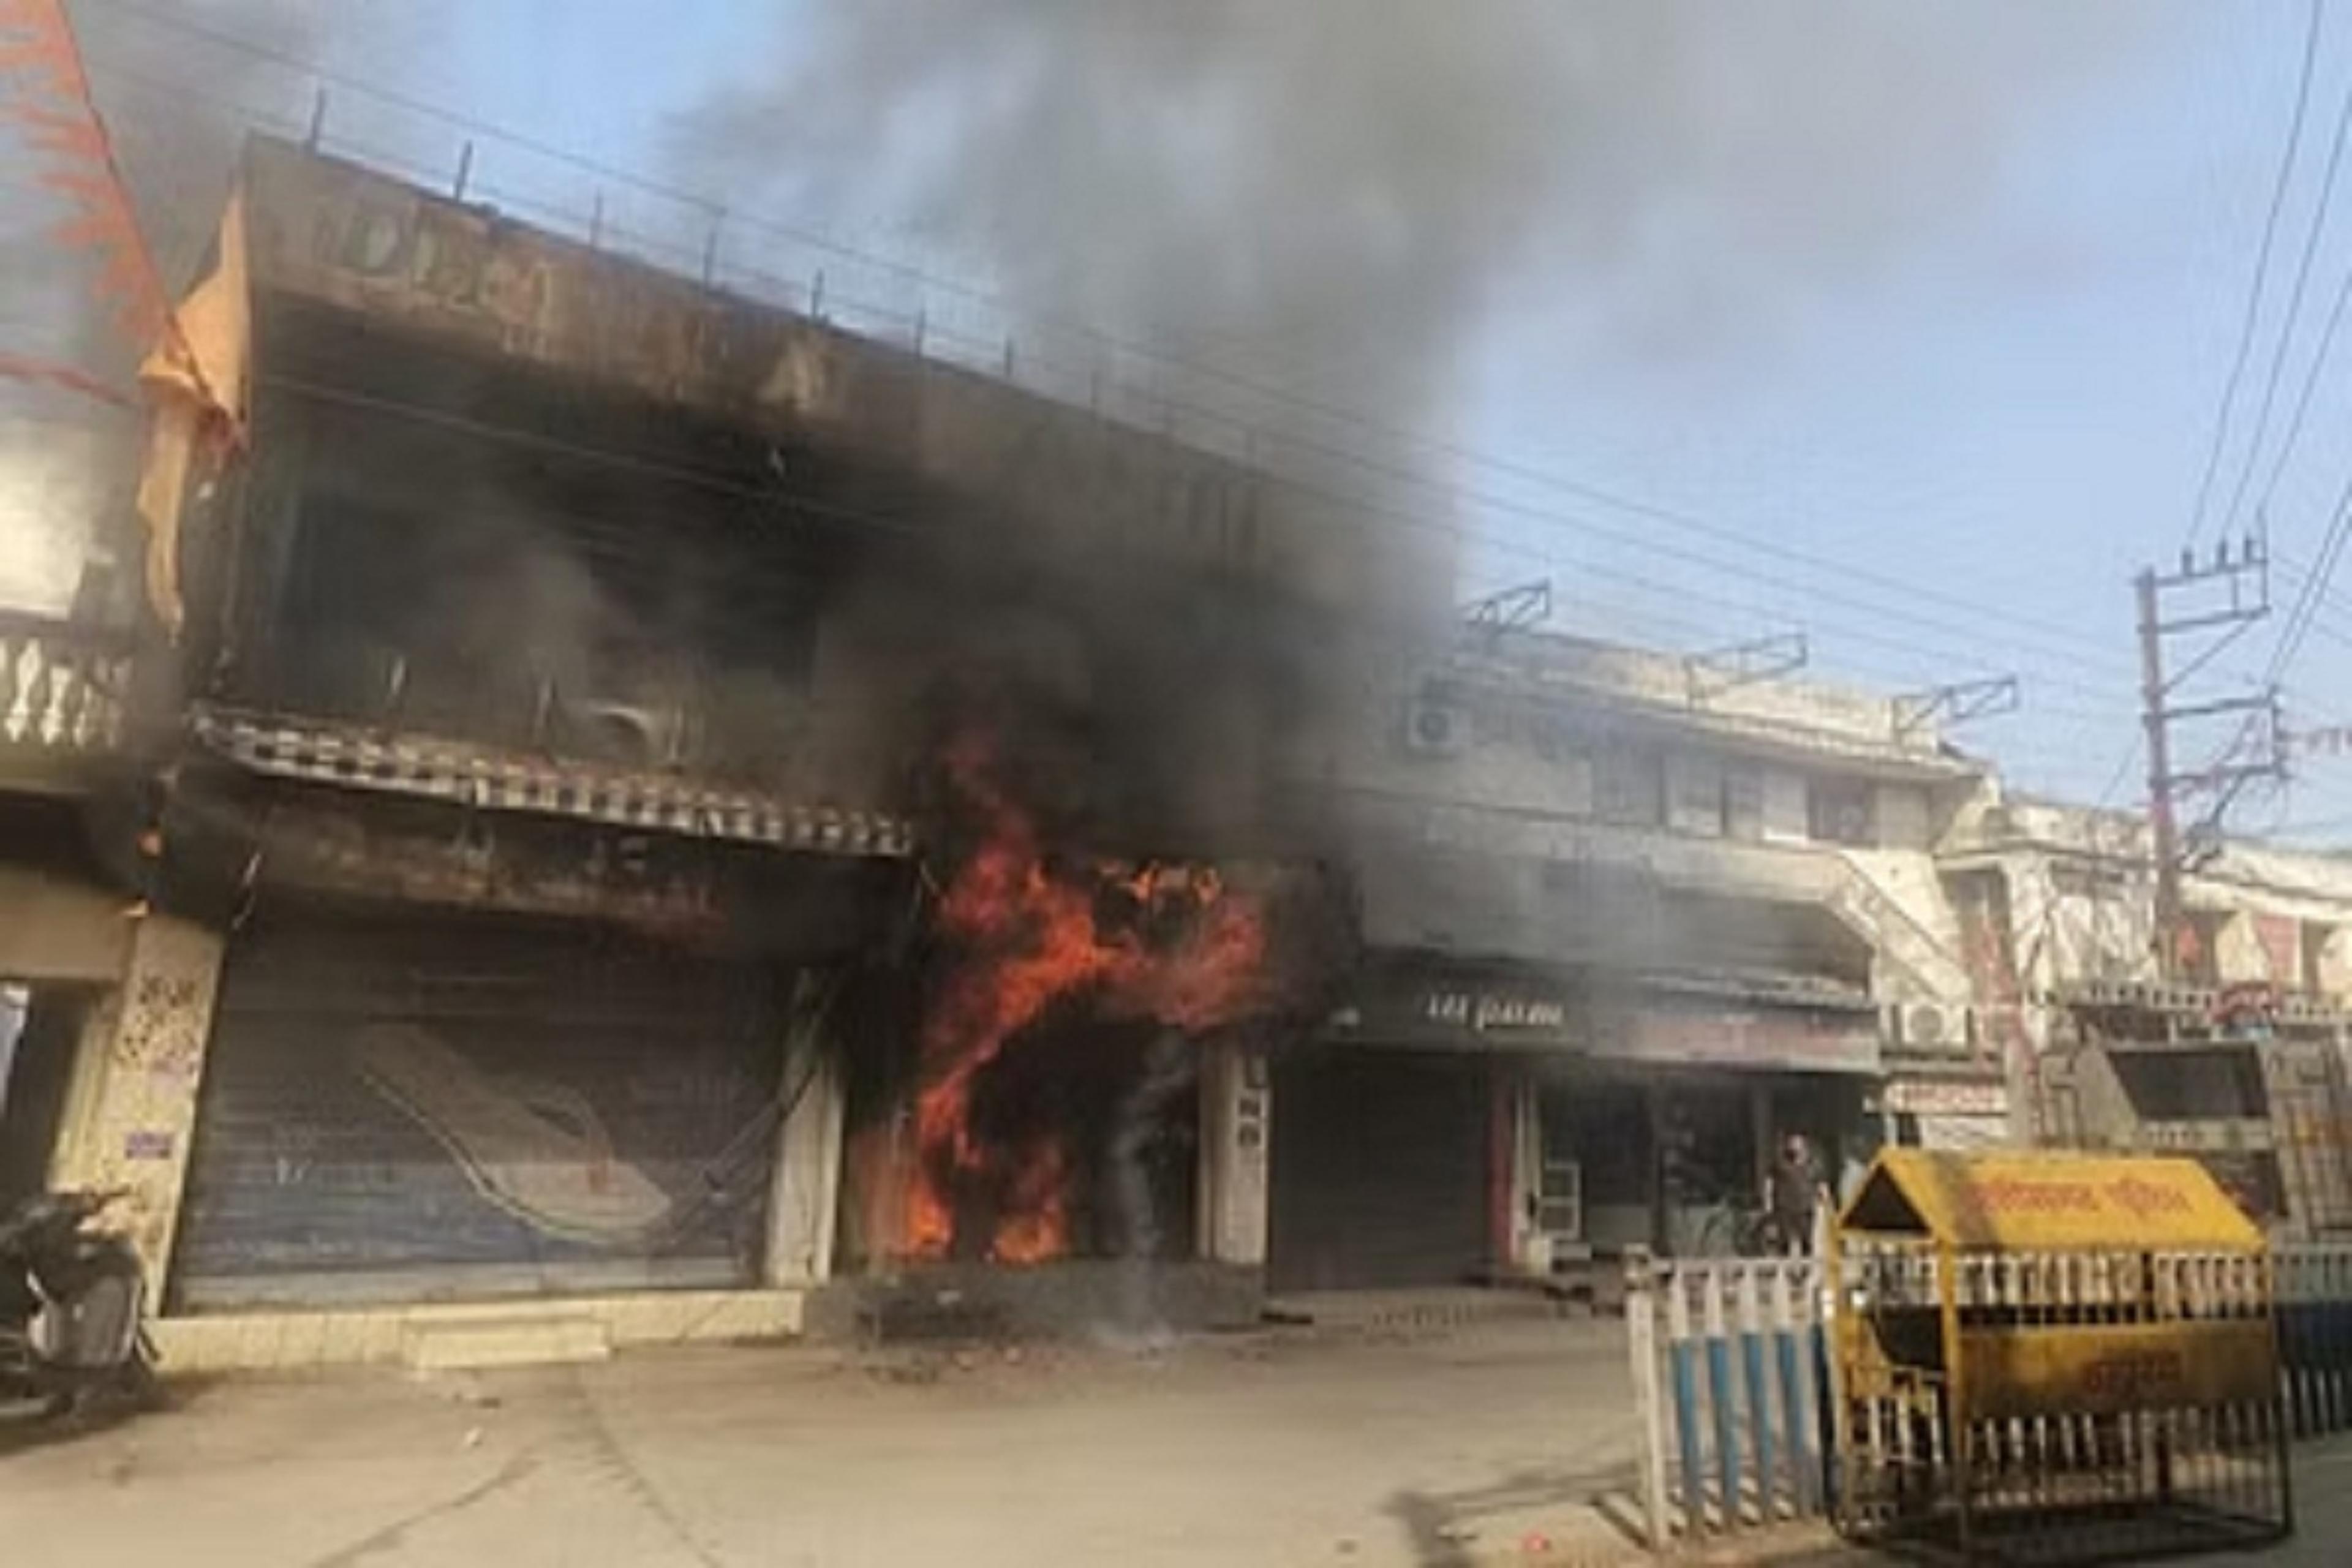 Raigarh: कपड़ा दुकान में लगी भीषण आग, ऊंची-ऊंची लपटें देख सहमे गए लोग…सामने आई
यह वजह